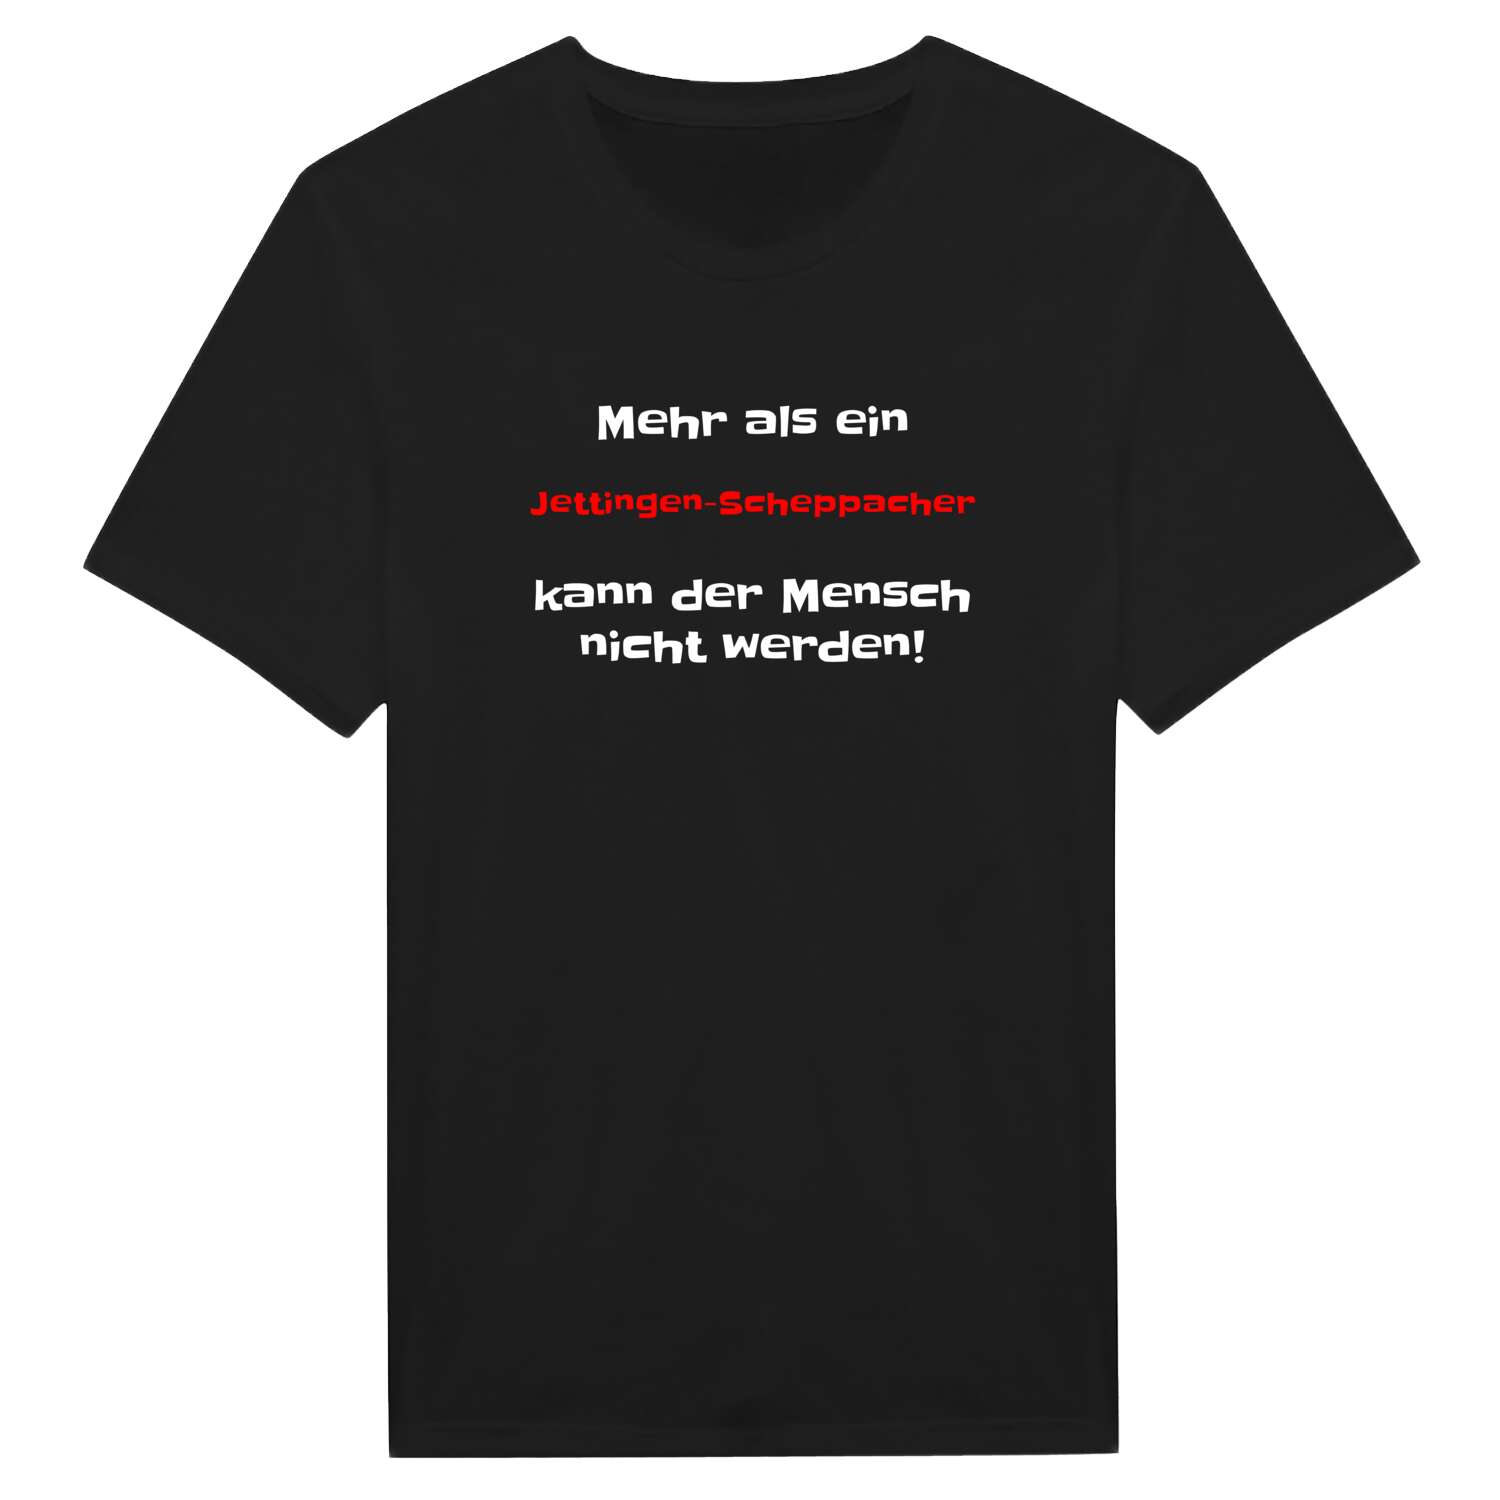 Jettingen-Scheppach T-Shirt »Mehr als ein«